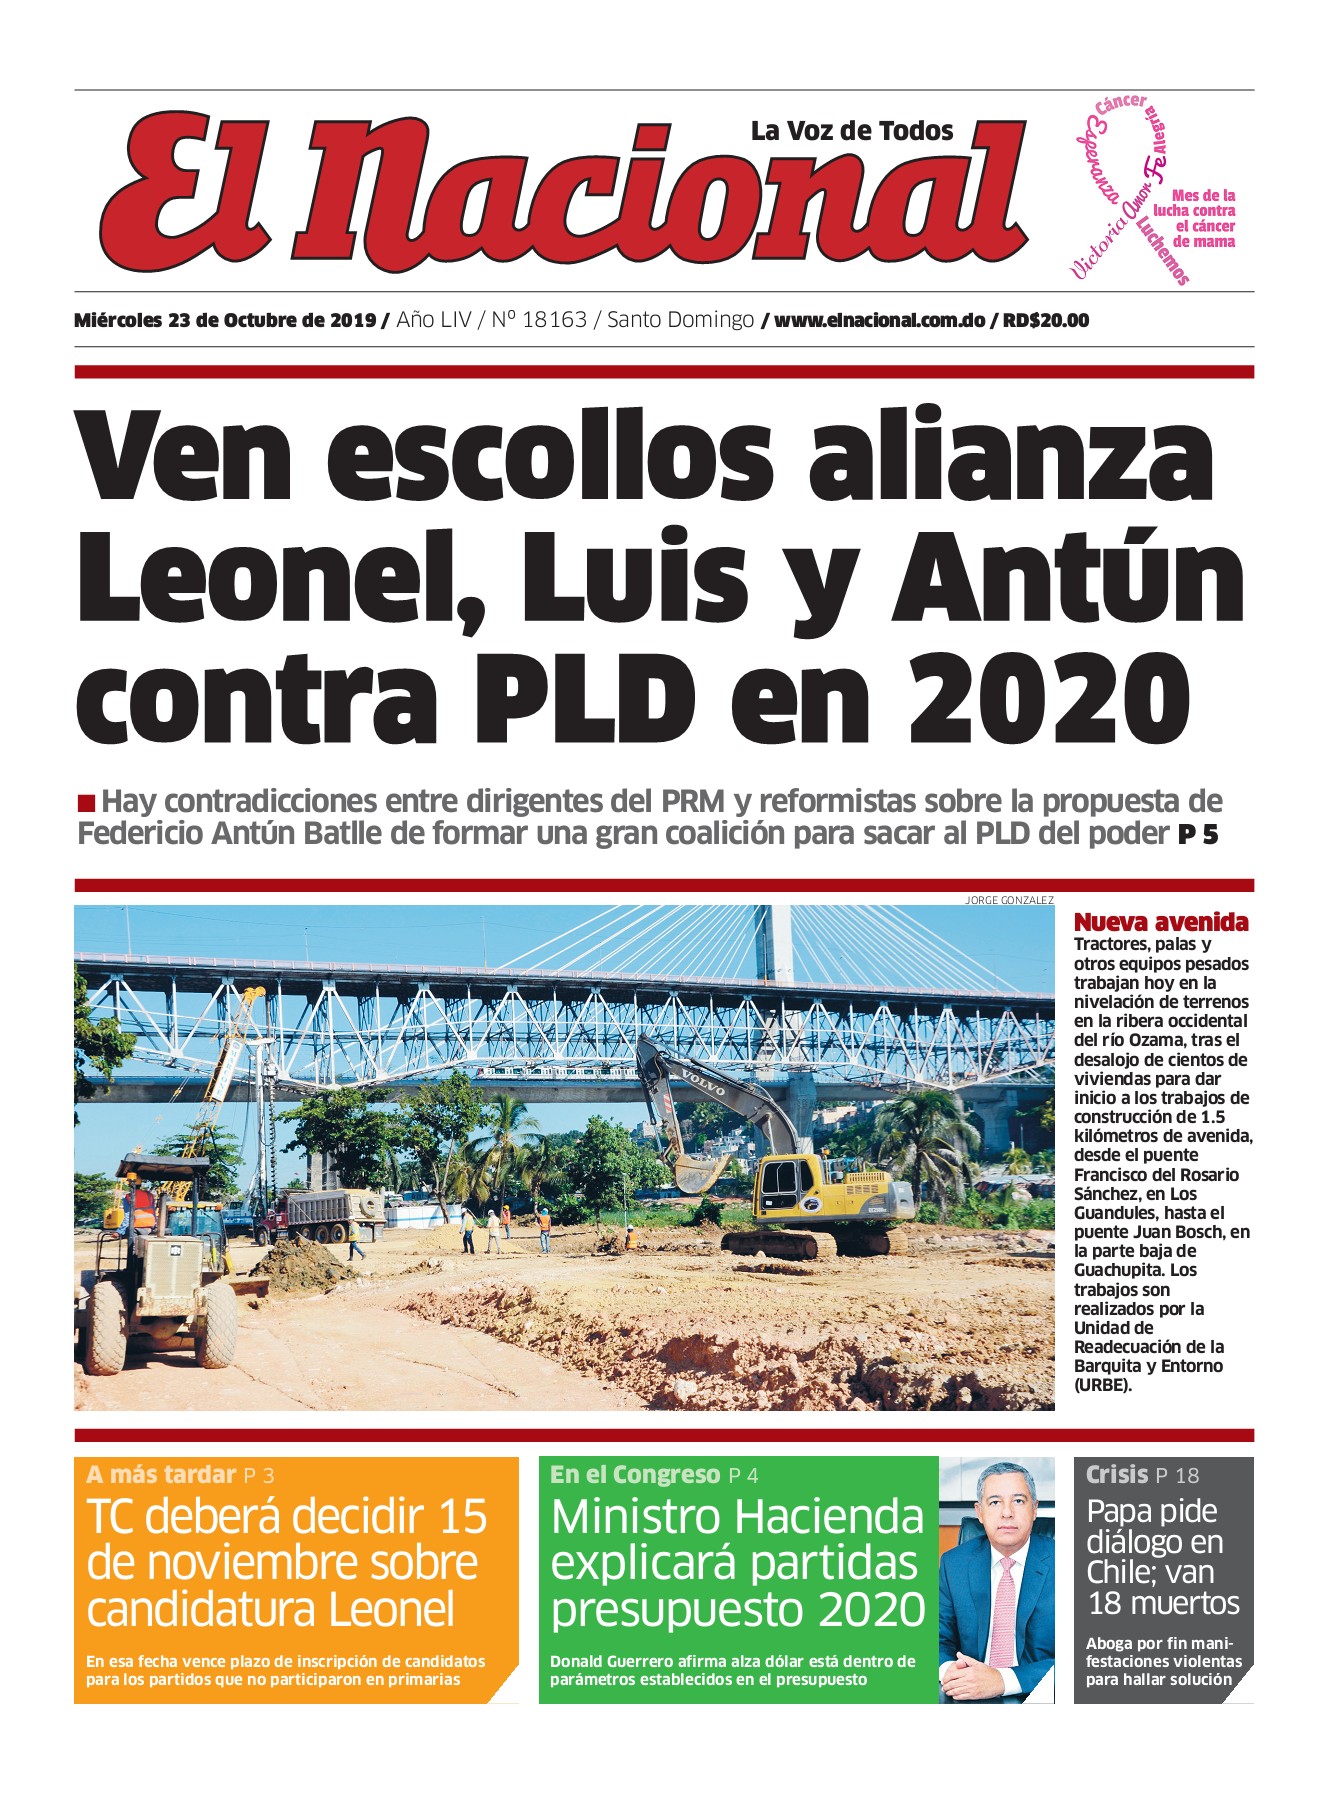 Portada Periódico El Nacional, Miércoles 23 de Octubre, 2019